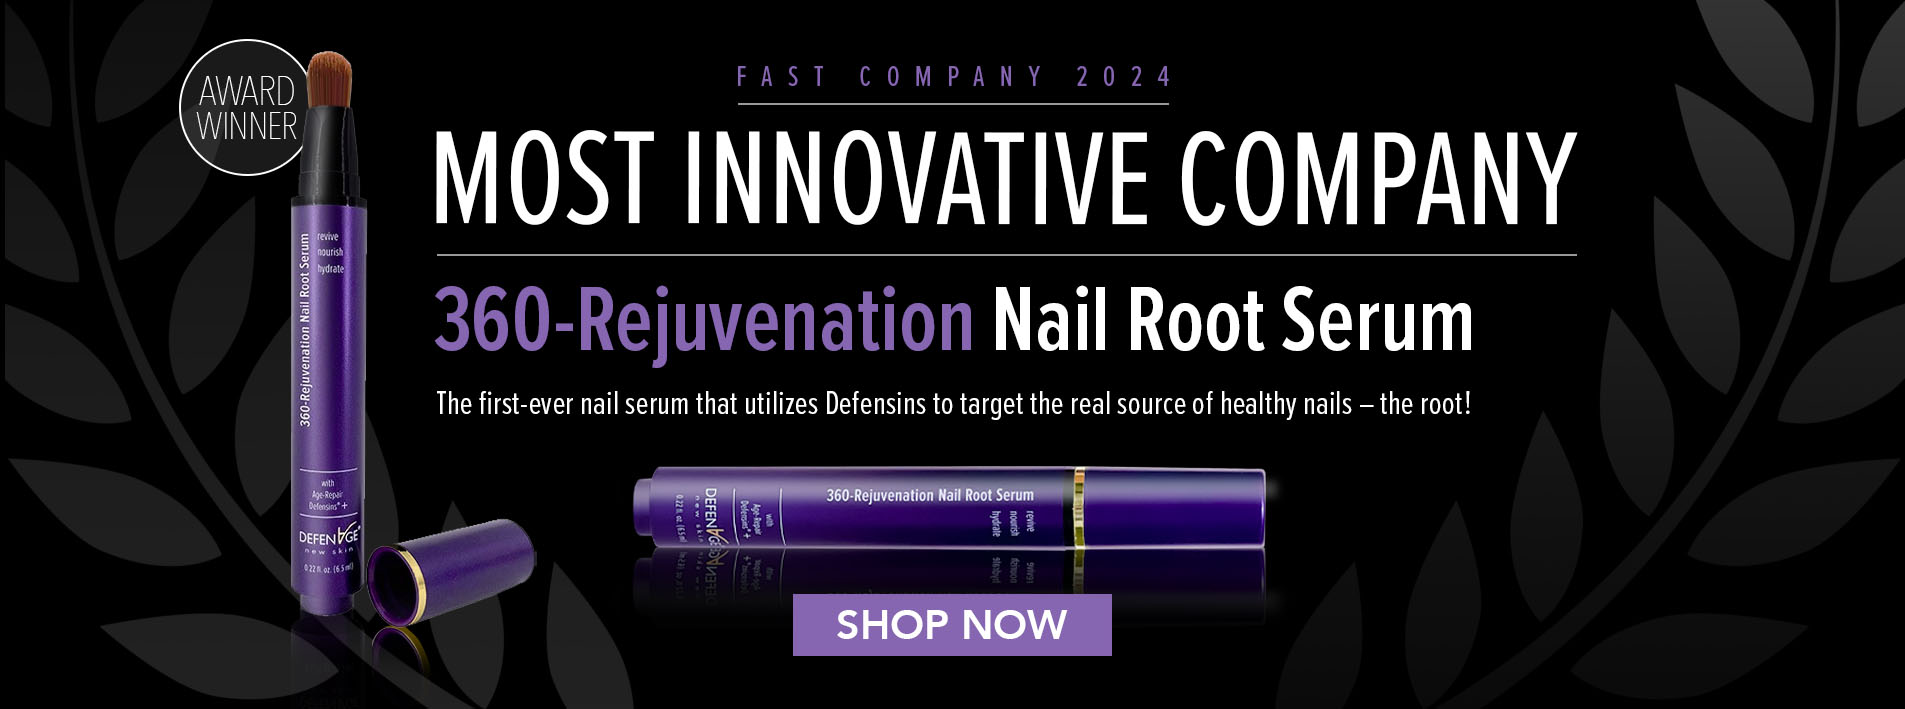 Most Innovative Company - Nail Serum - Fast Company Award